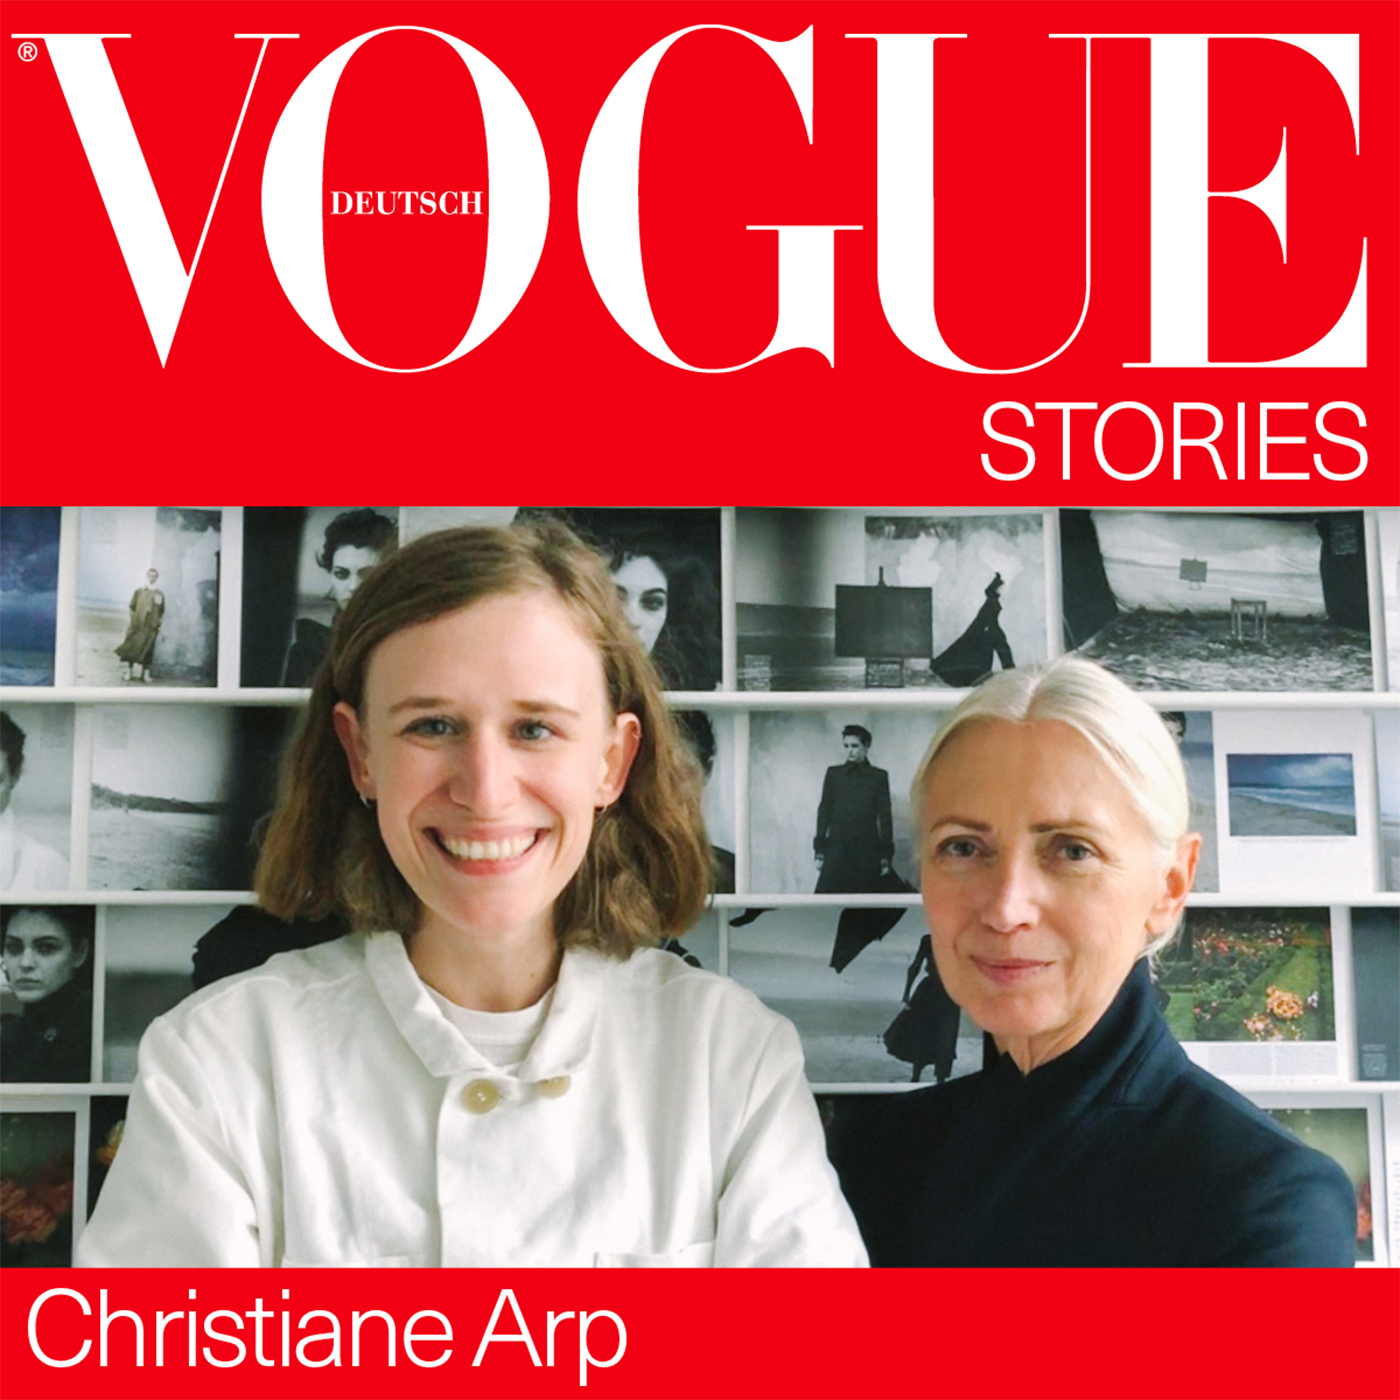 Christiane Arp, wie relevant ist Vogue Deutschland heute noch?